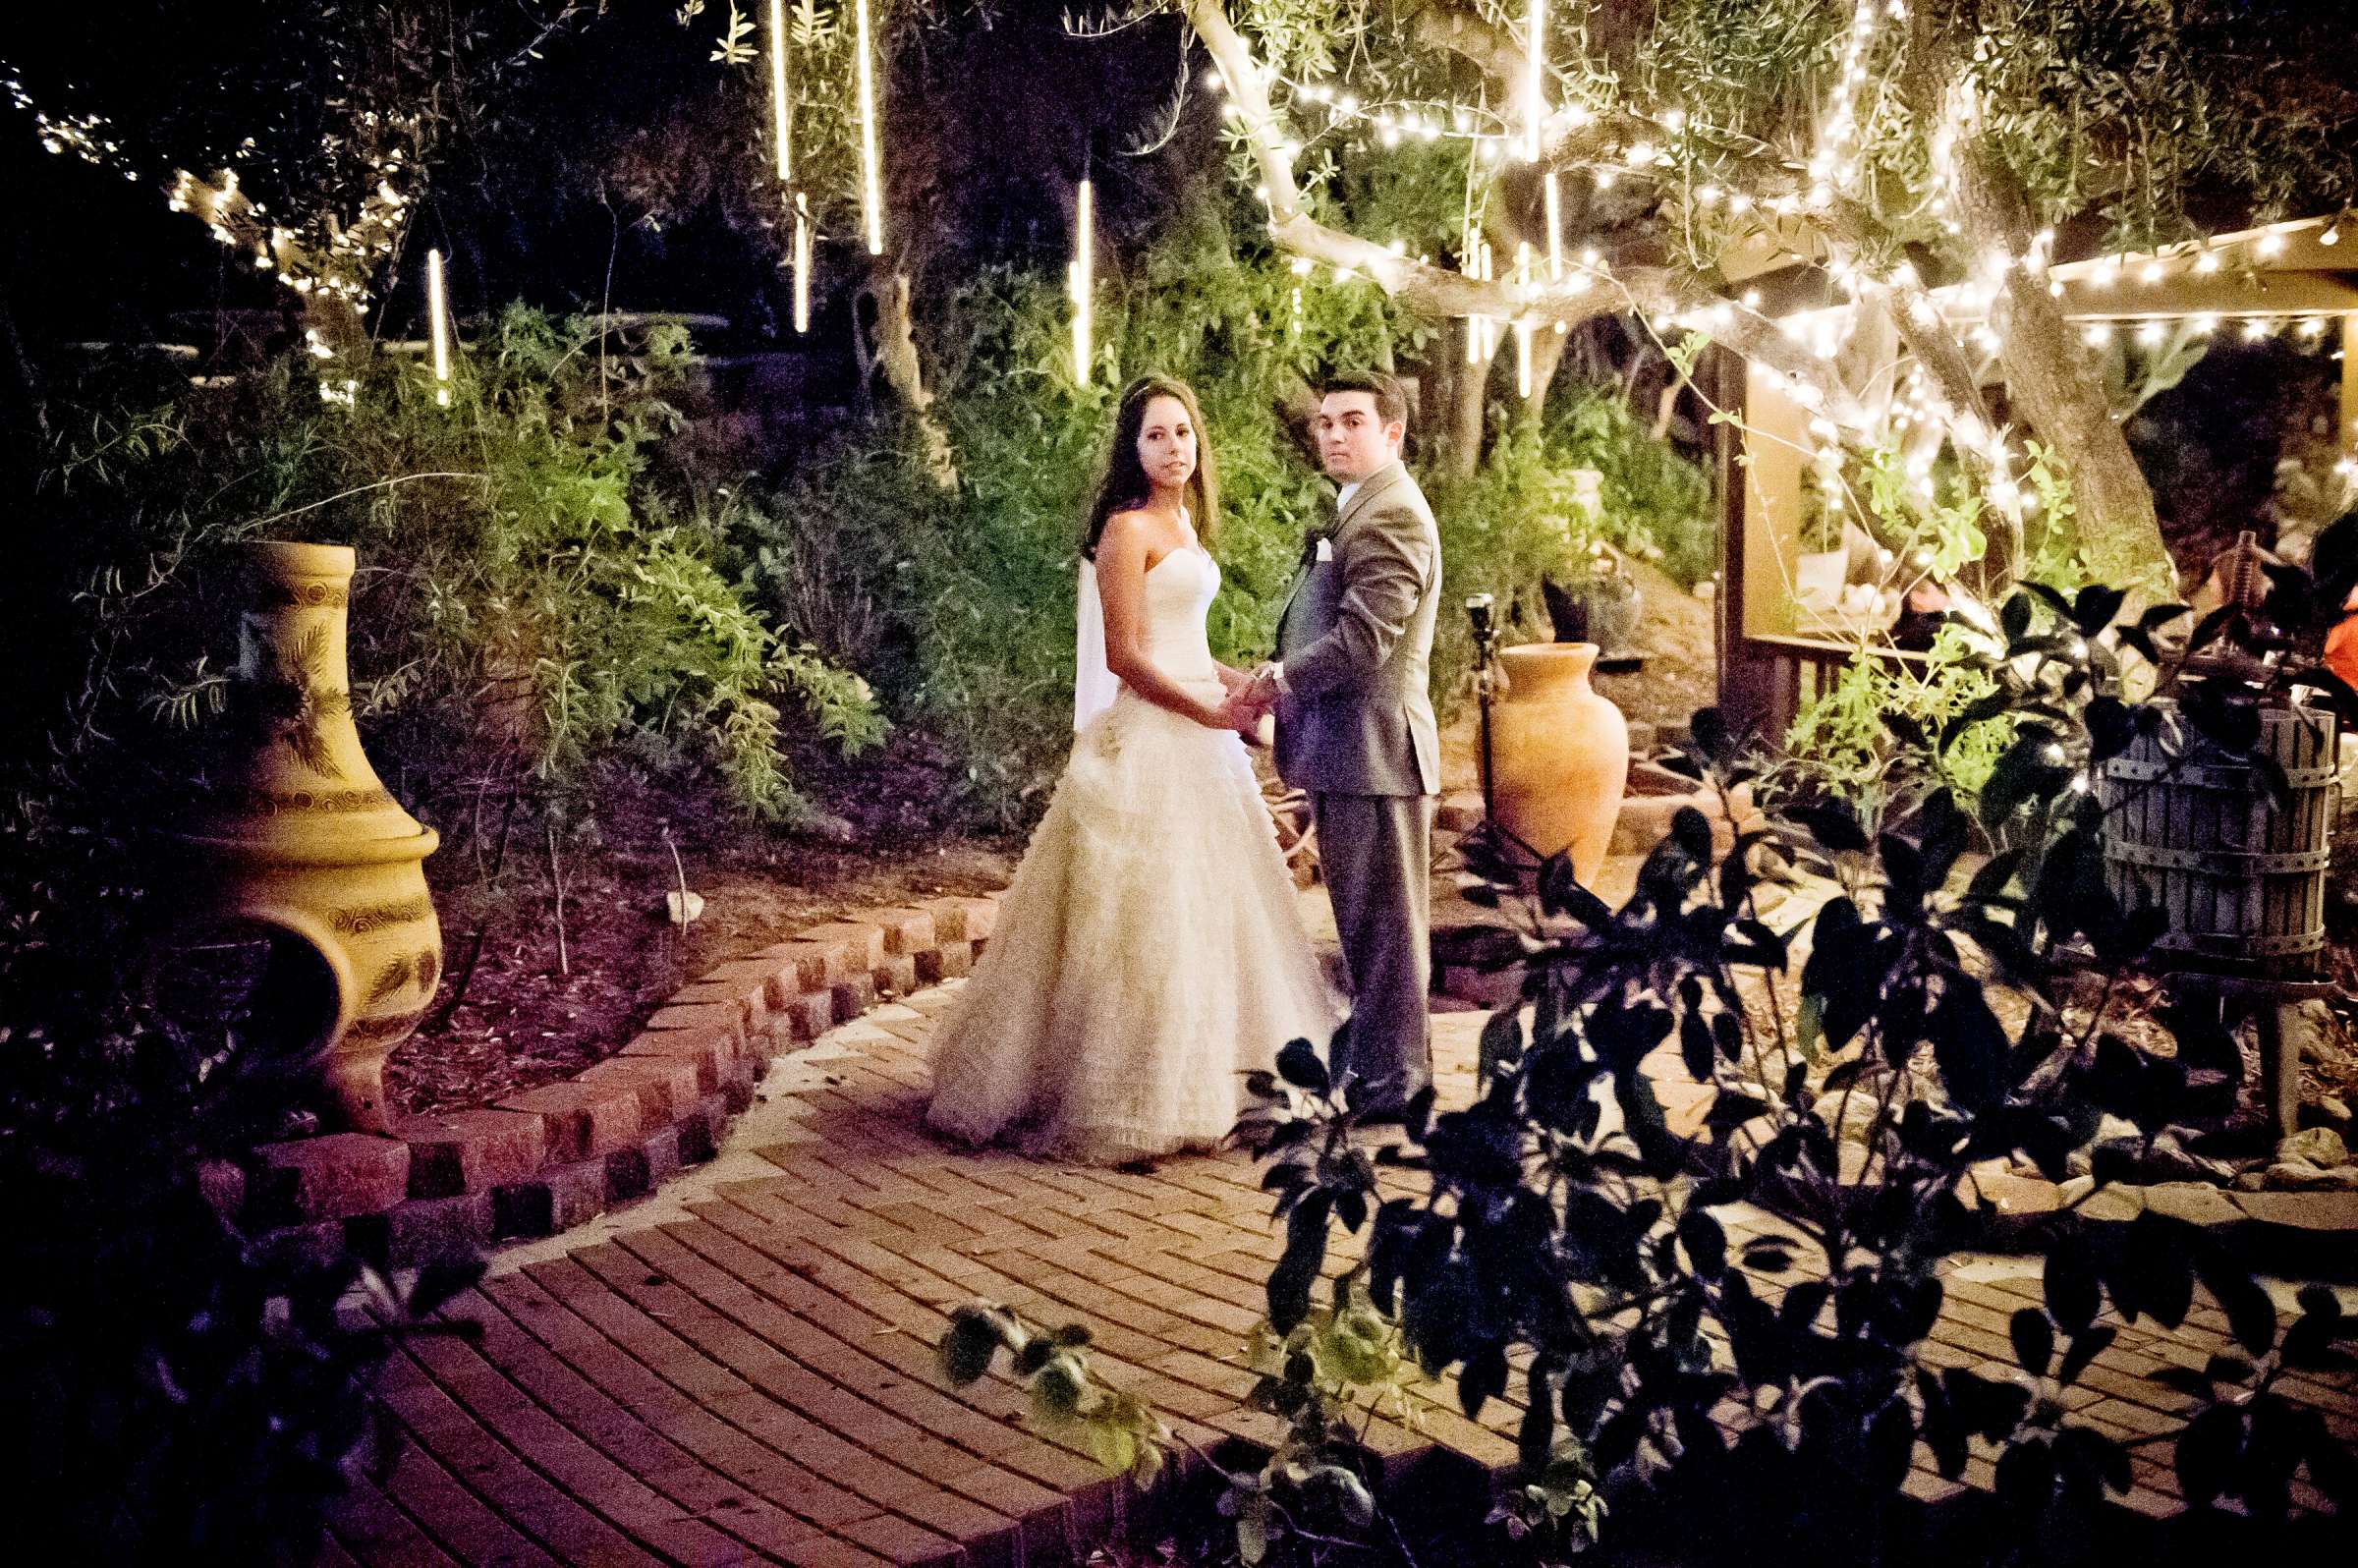 Mount Palomar Winery Wedding, Brandi and Jason Wedding Photo #321700 by True Photography